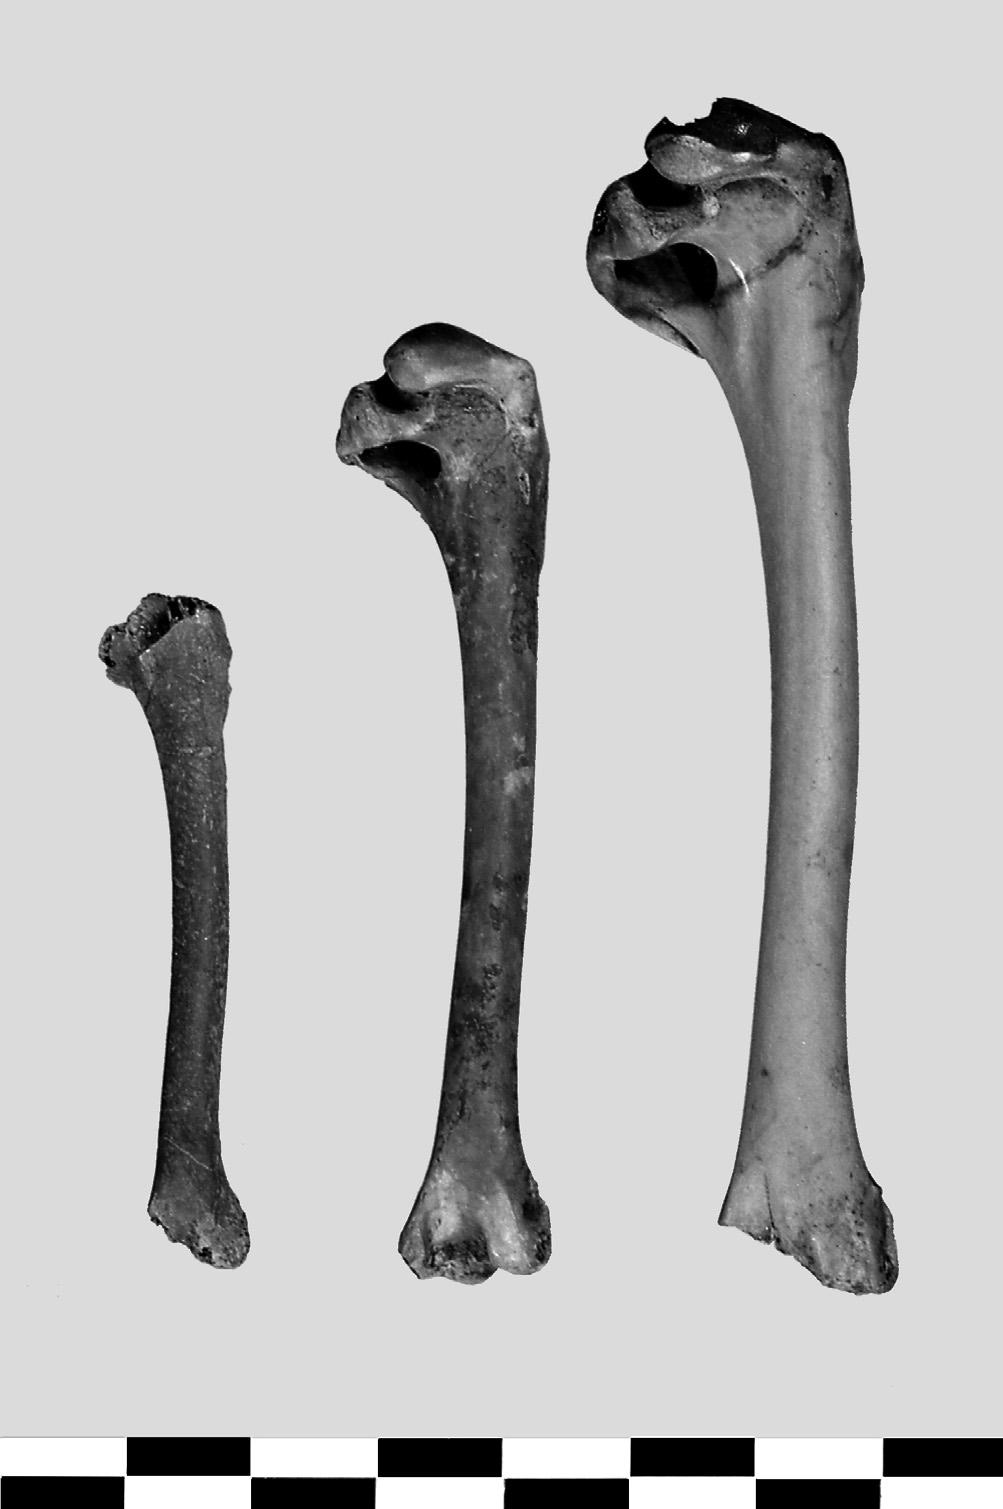 Afb. 15 V.l.n.r. humerus winter taling, slobeend en wilde eend. (Anas crecca) is aangetoond met in totaal 40 botten.